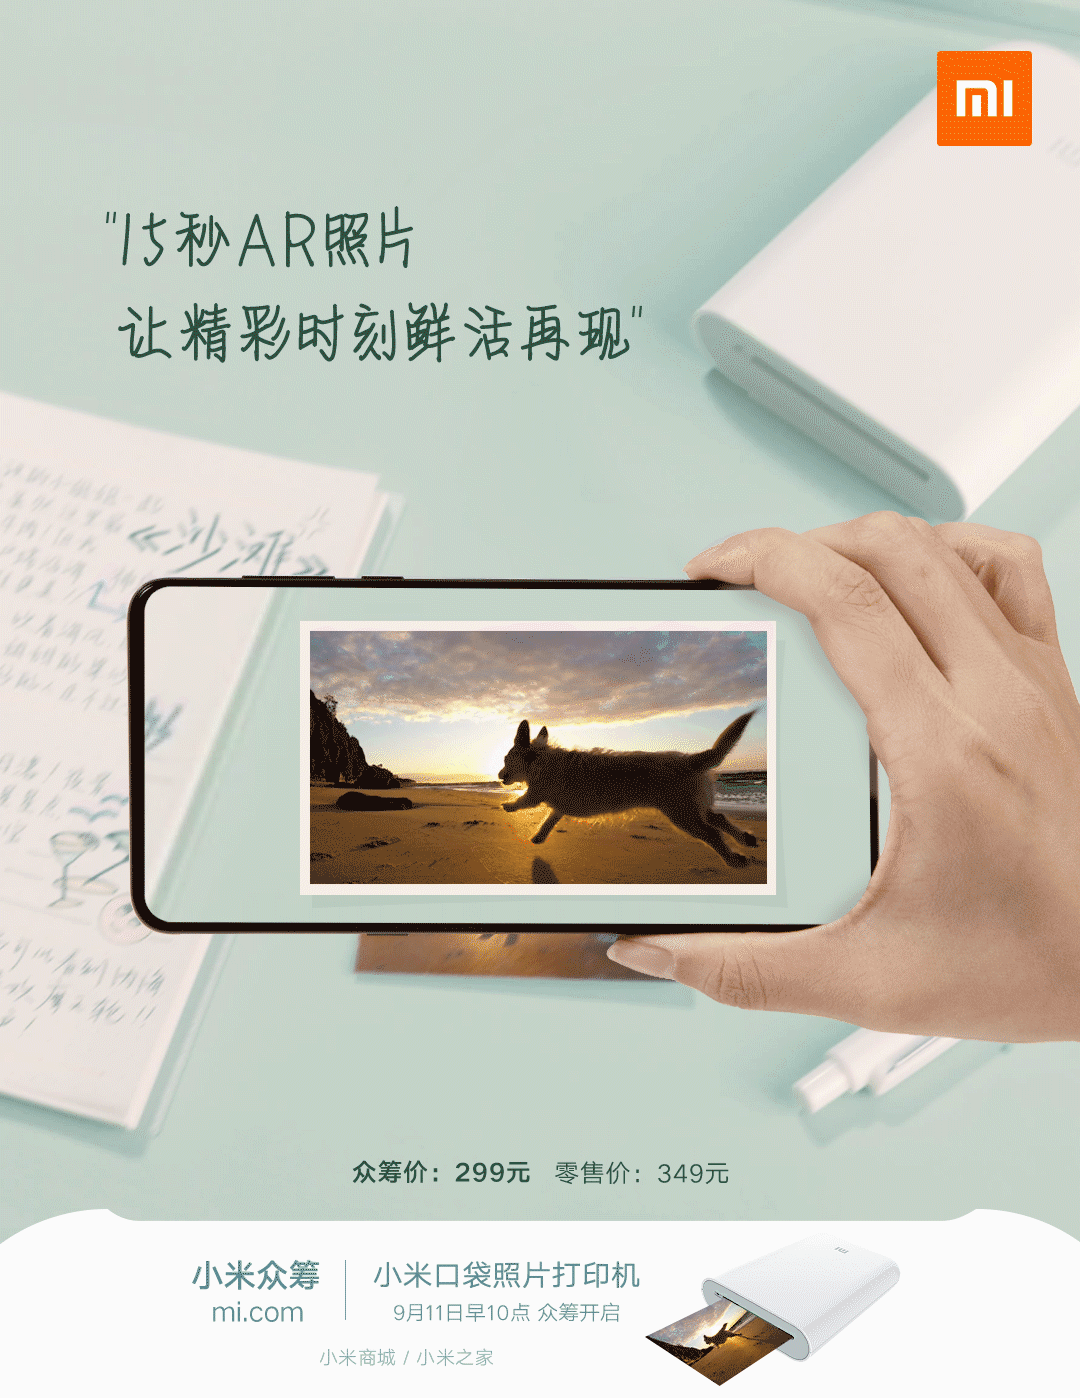 Ny Mijia AR fotoprinter, Xiaomi förstärkt verklighetsskrivare. Senaste nytt från Xiaomi